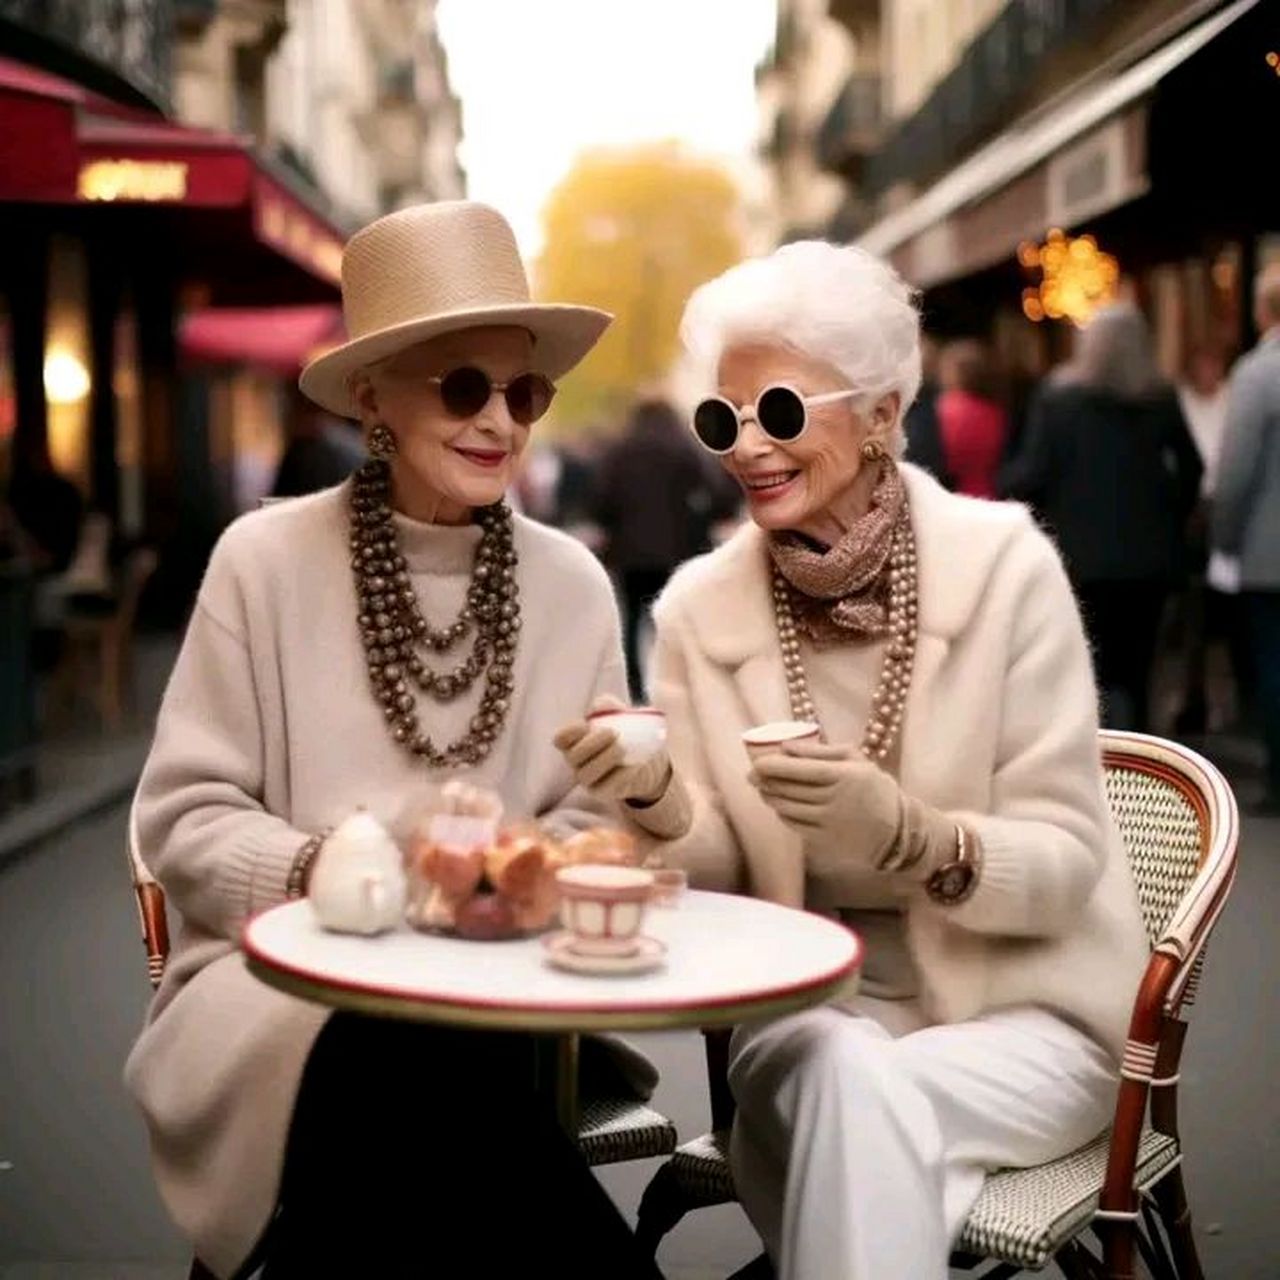 一白发老奶奶与闺蜜一起喝下午茶,精致优雅